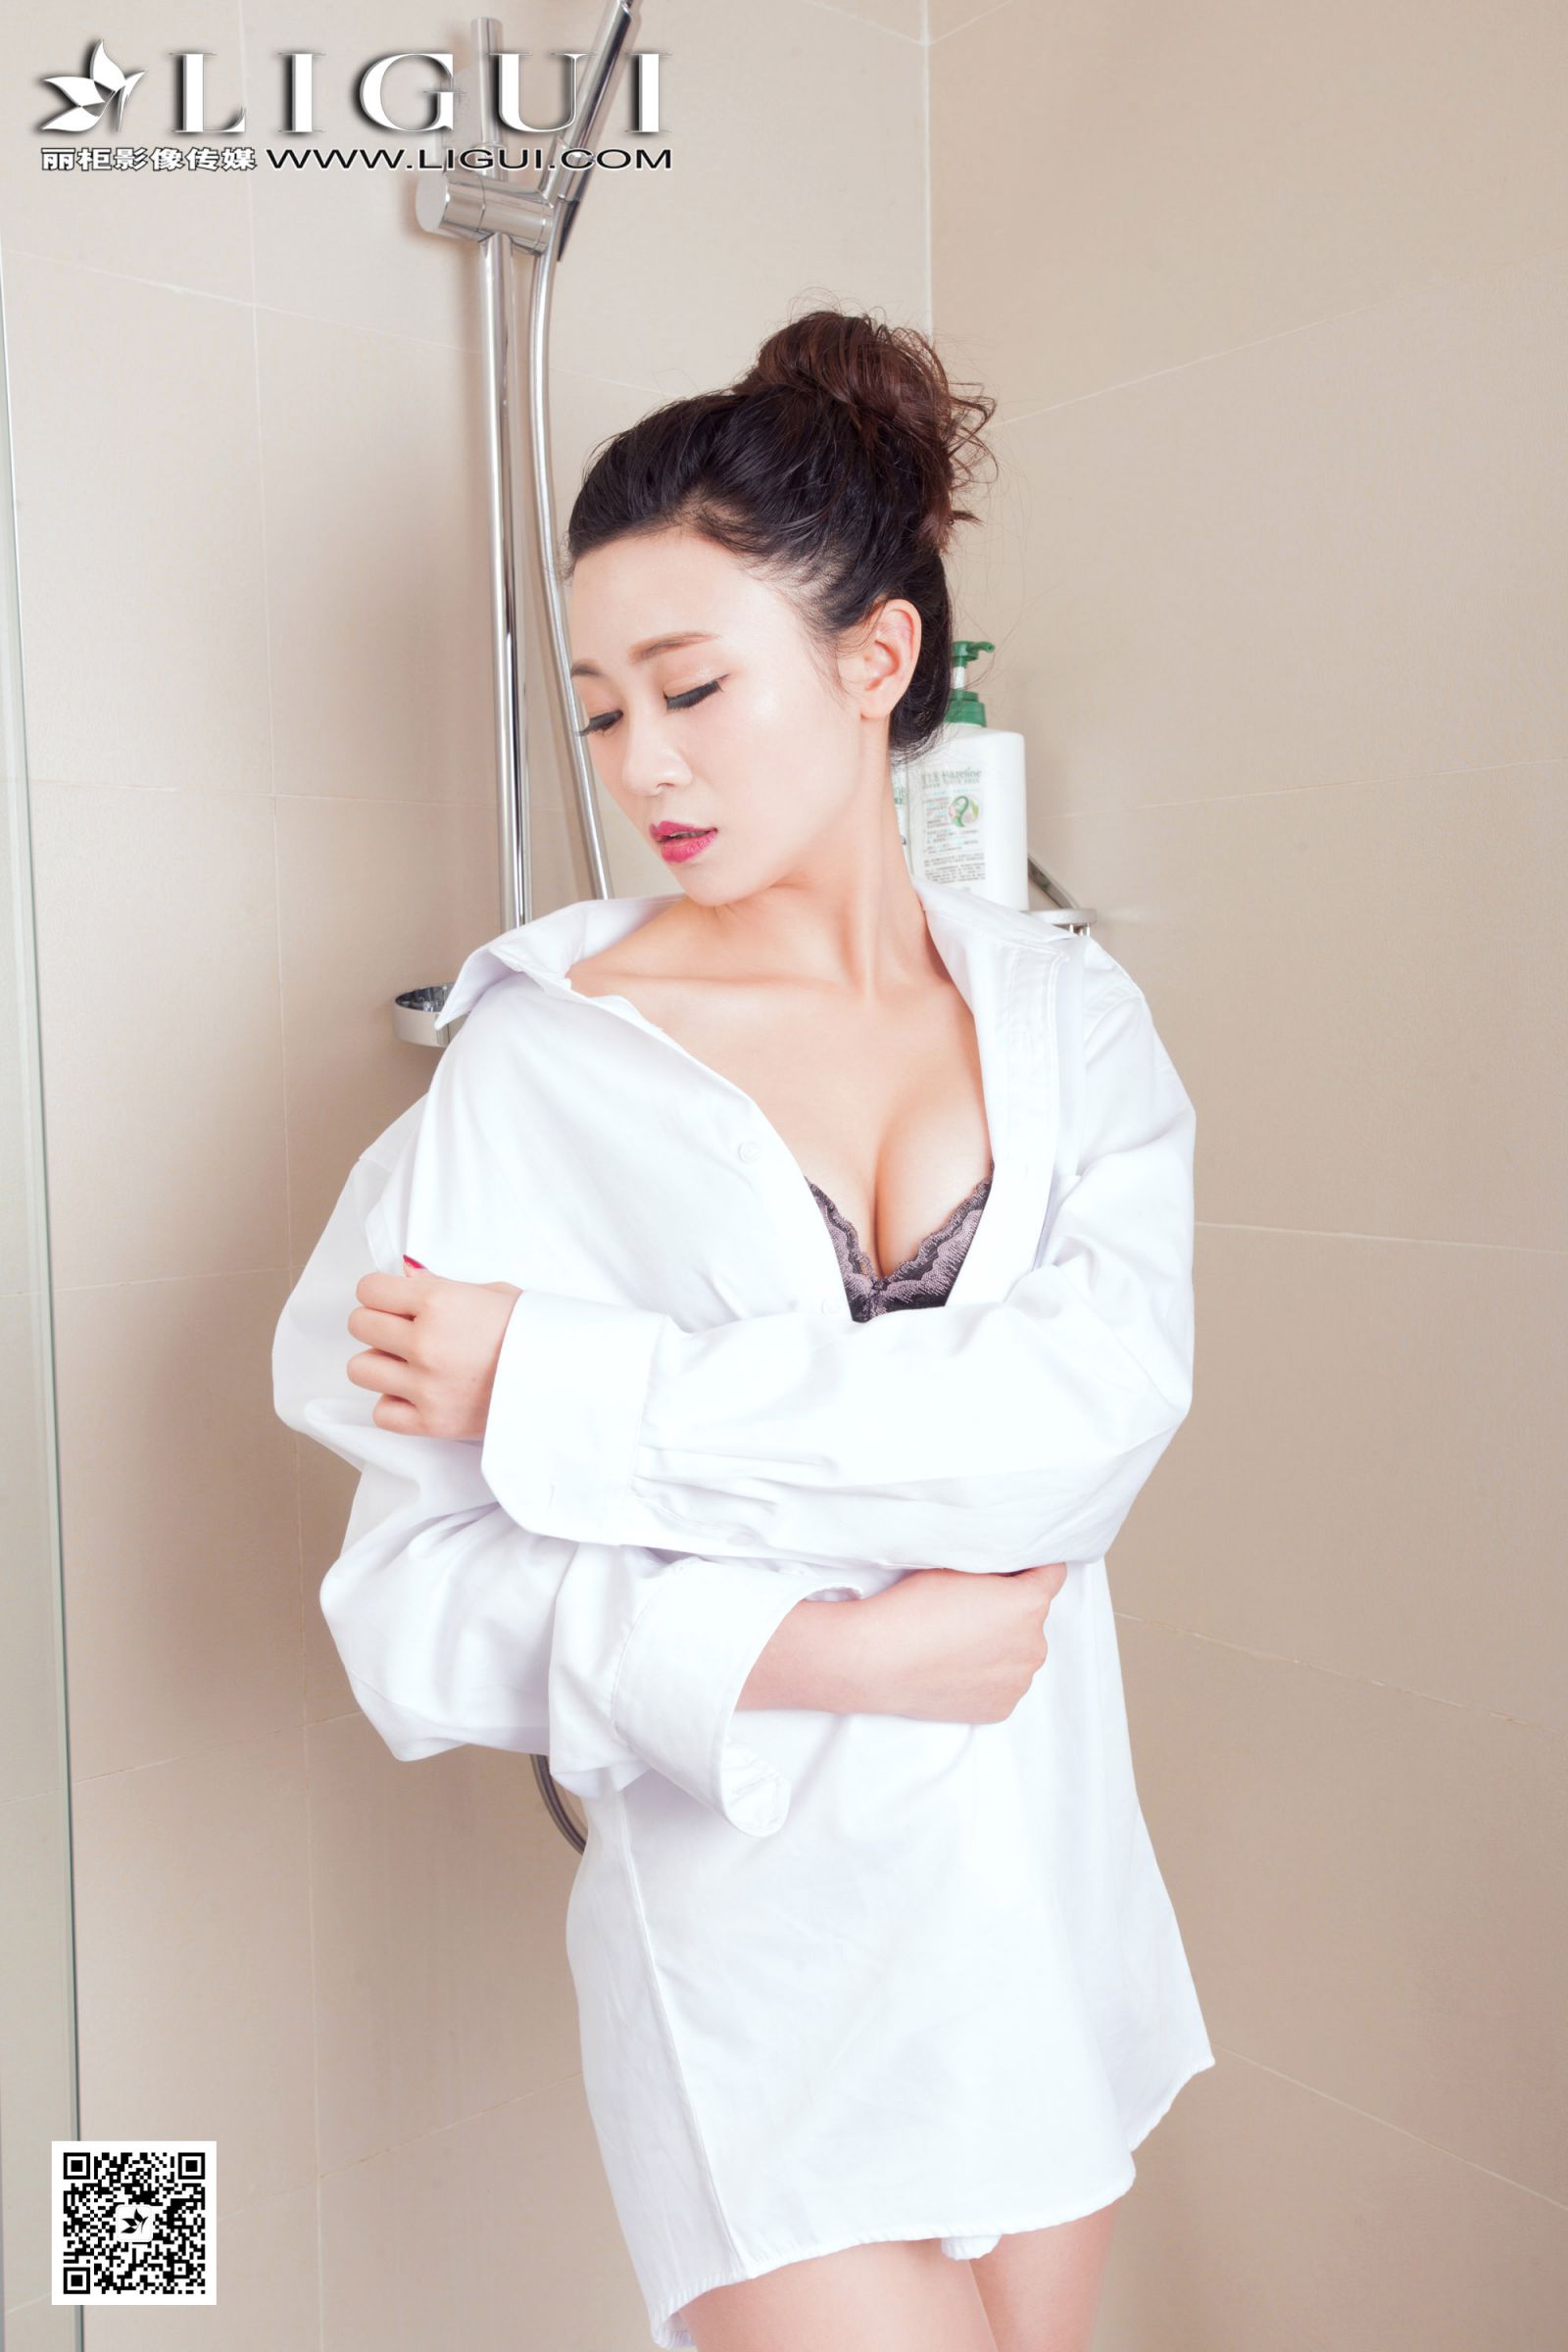 [Ligui丽柜] Model 妮可 - 浴室白衬衫湿身美足[64P]